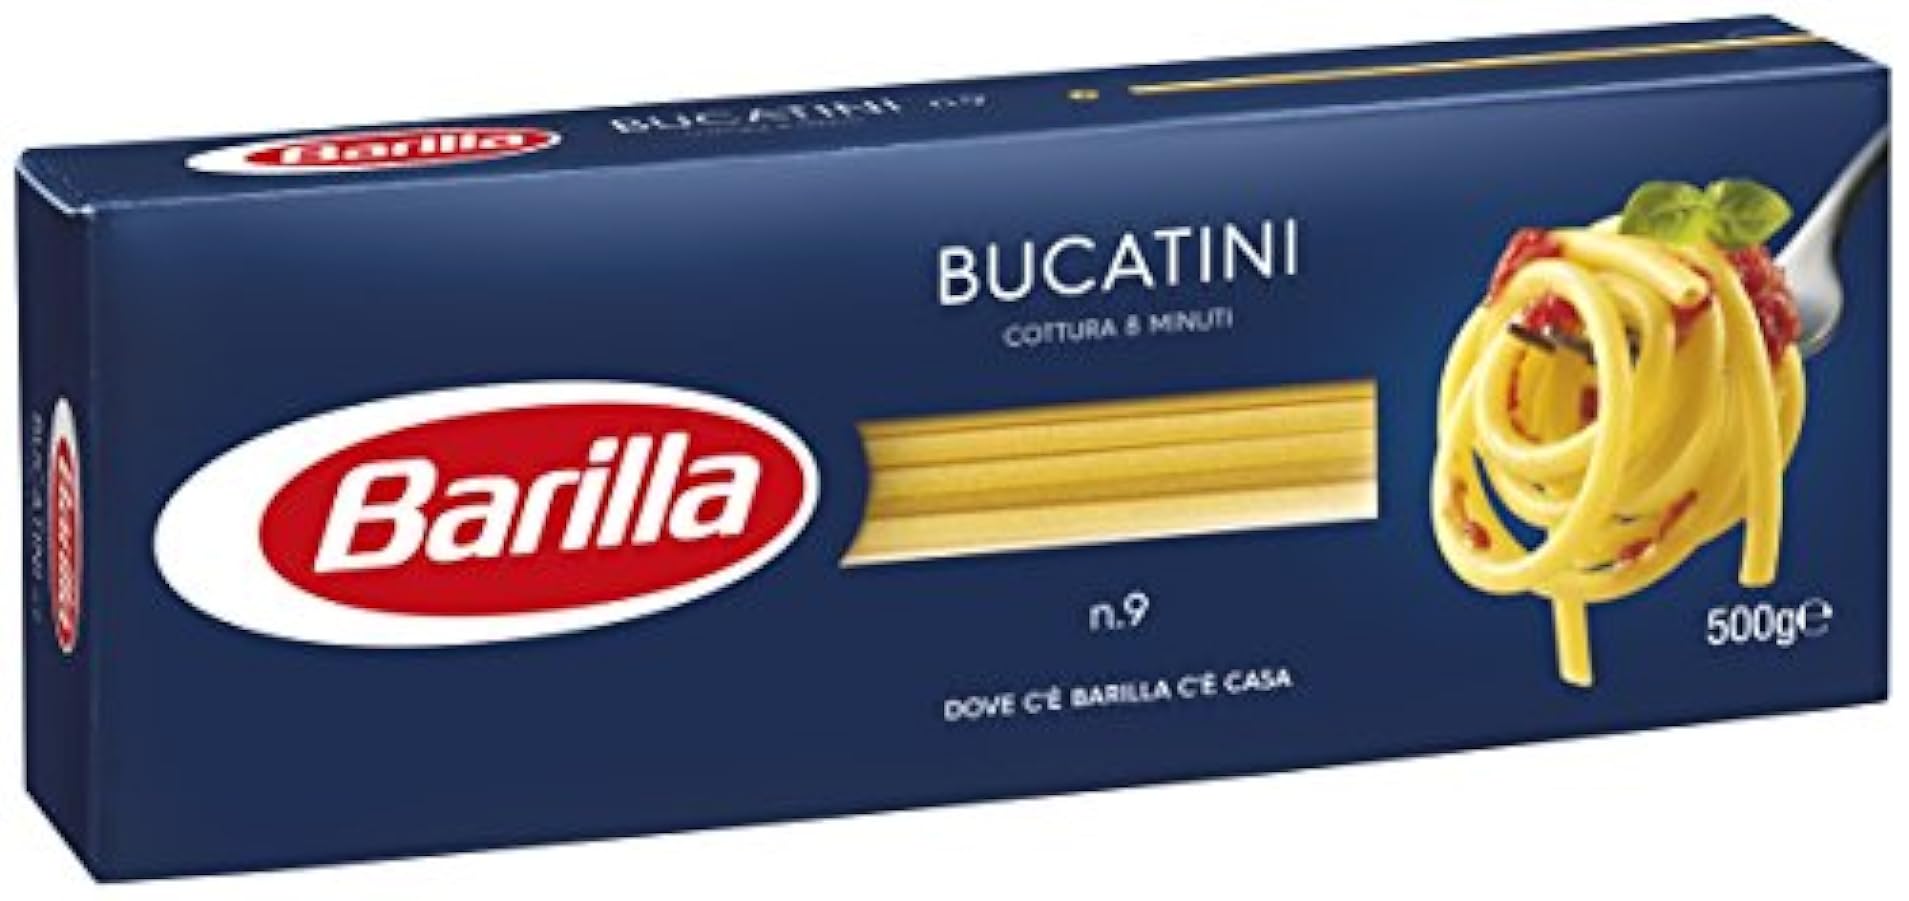 Barilla - Bucatini n.9 - 24 confezioni da 500 g [12kg] 